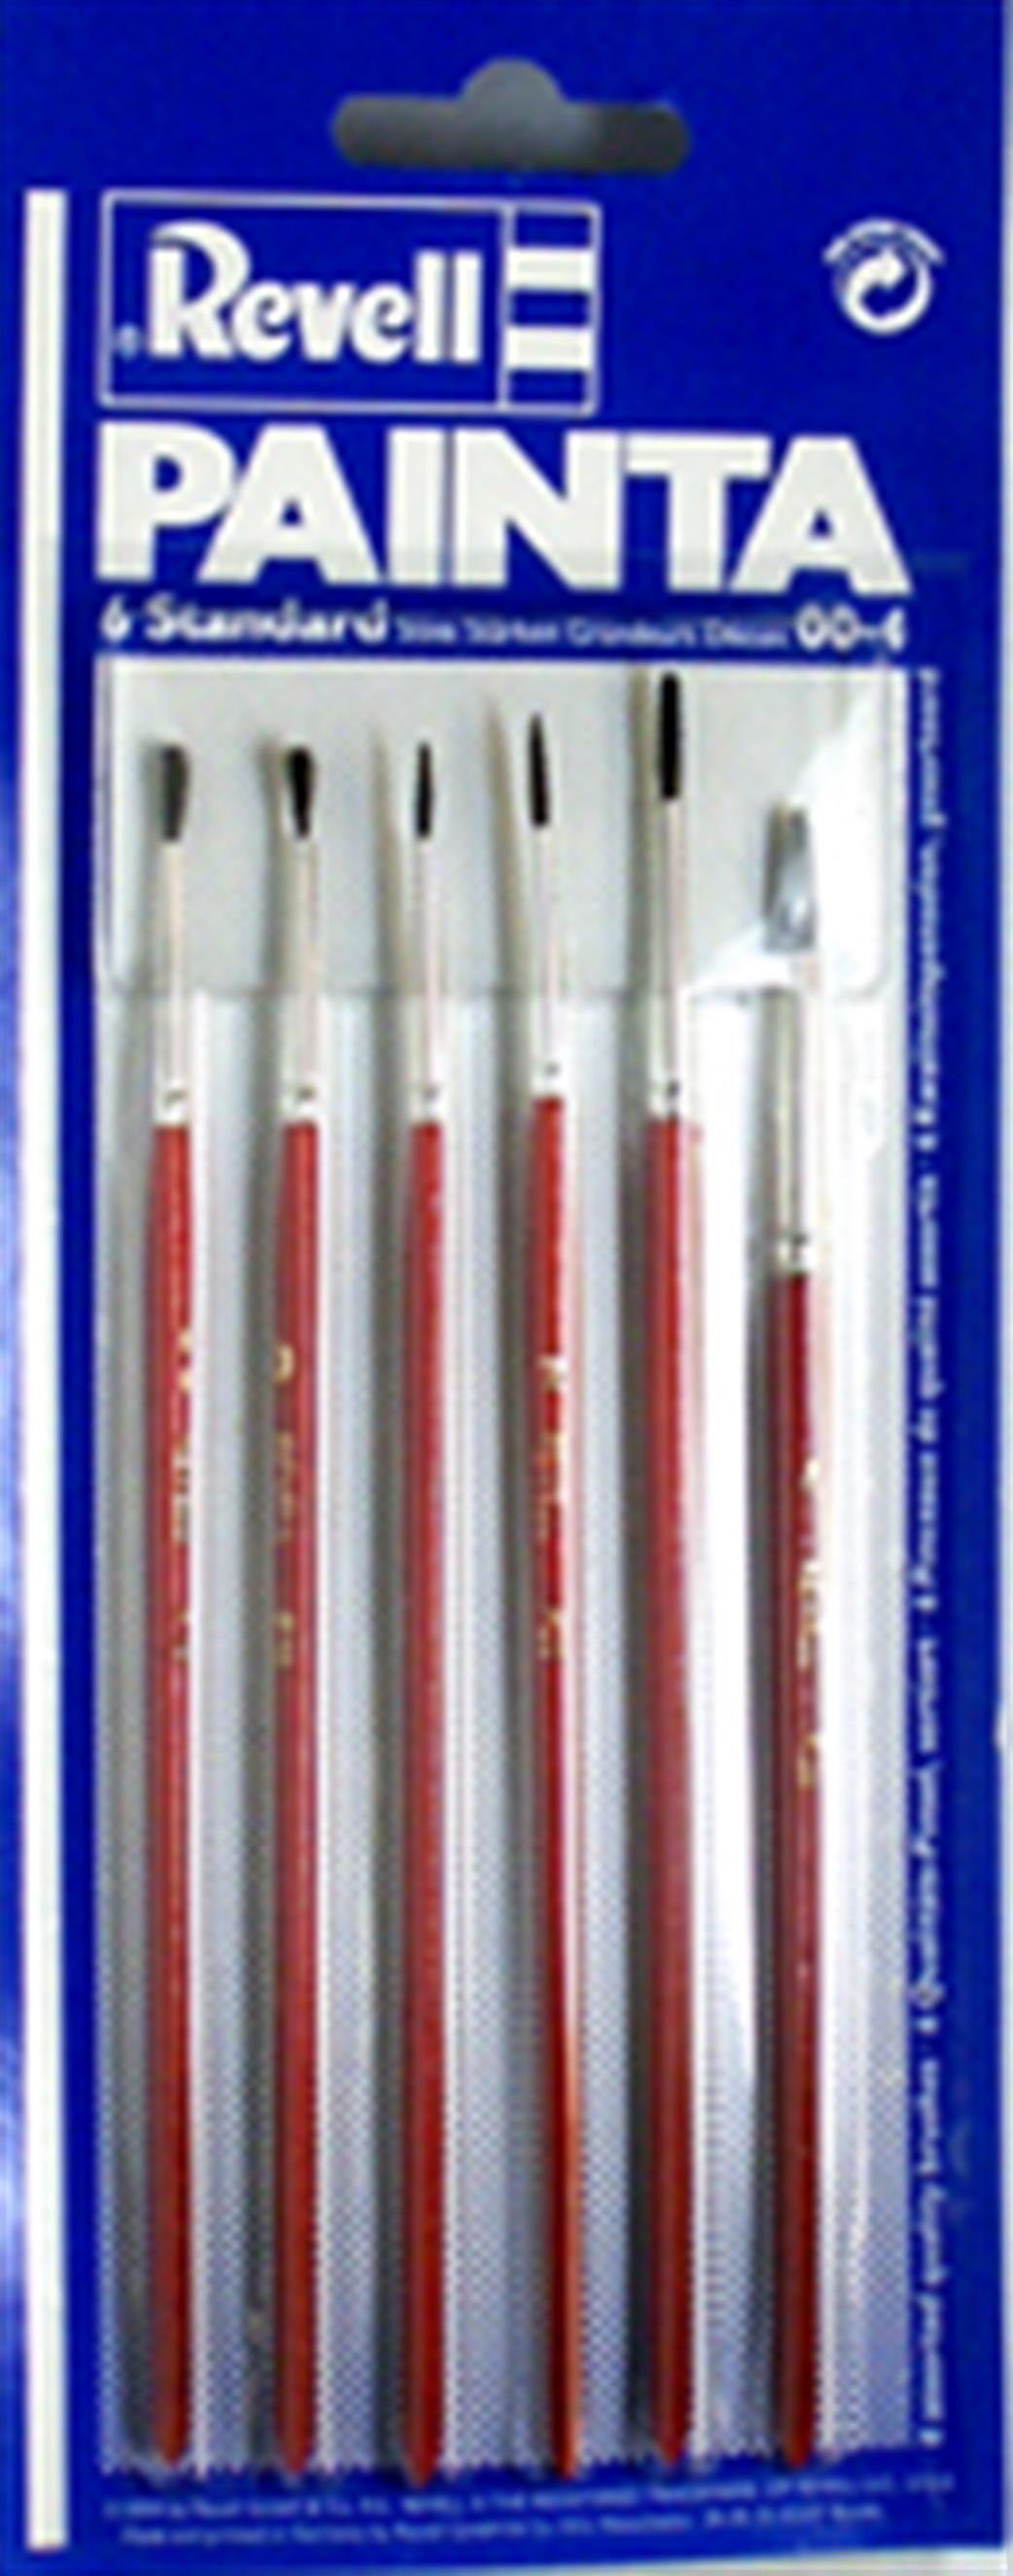 Revell 29621 Painta Set of 6 Standard Paint Brushes